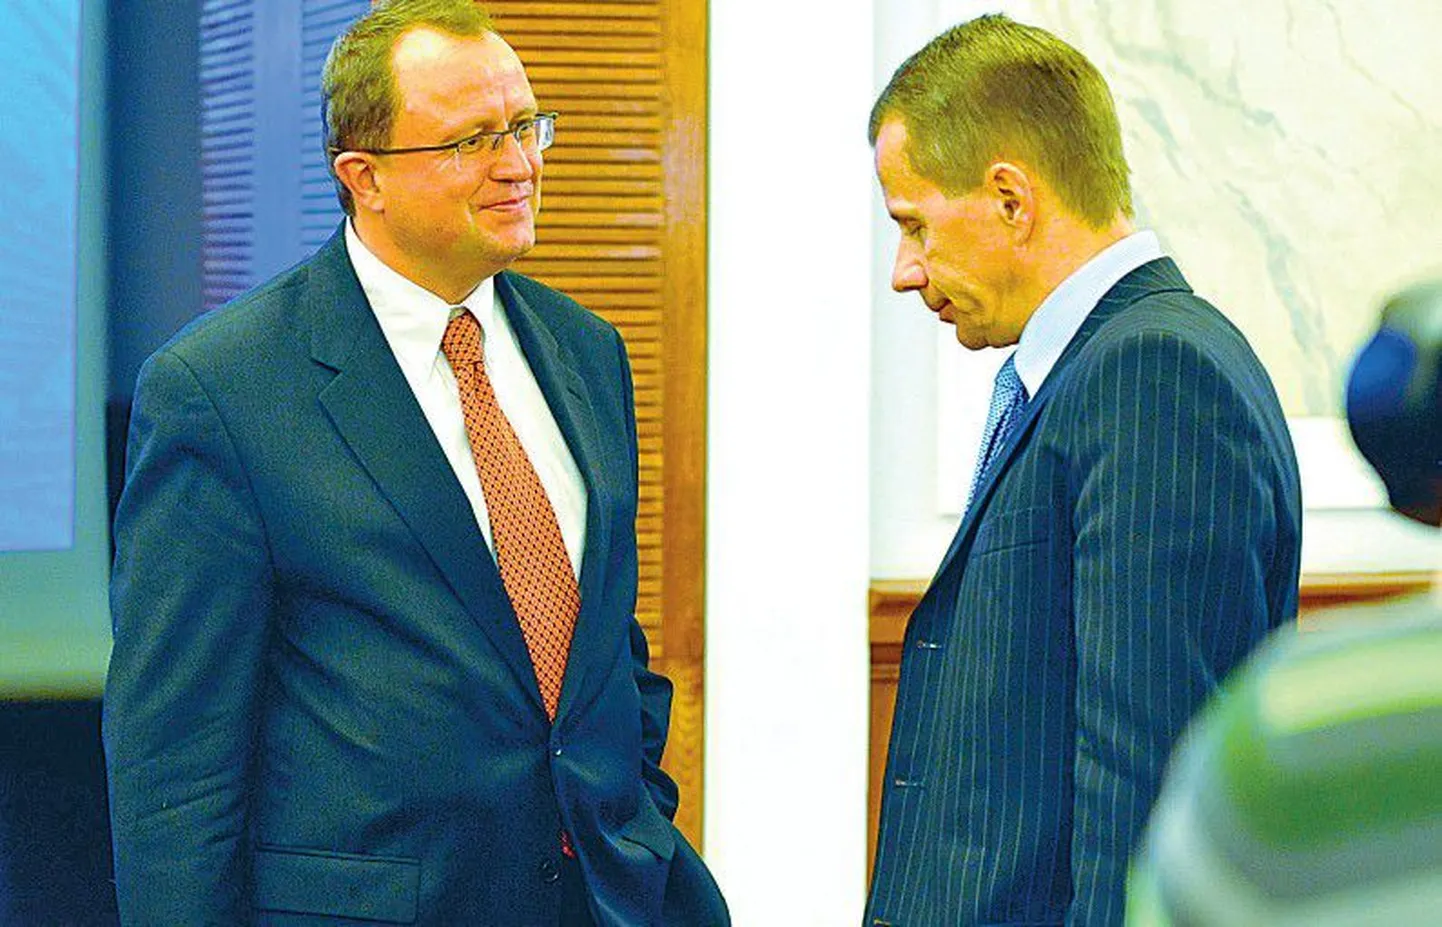 Министр финансов Юрген Лиги (справа) после пресс-конференции в Банке Эстонии слушает наставления руководителя делегации Международного валютного фонда Кристофера Розенберга.